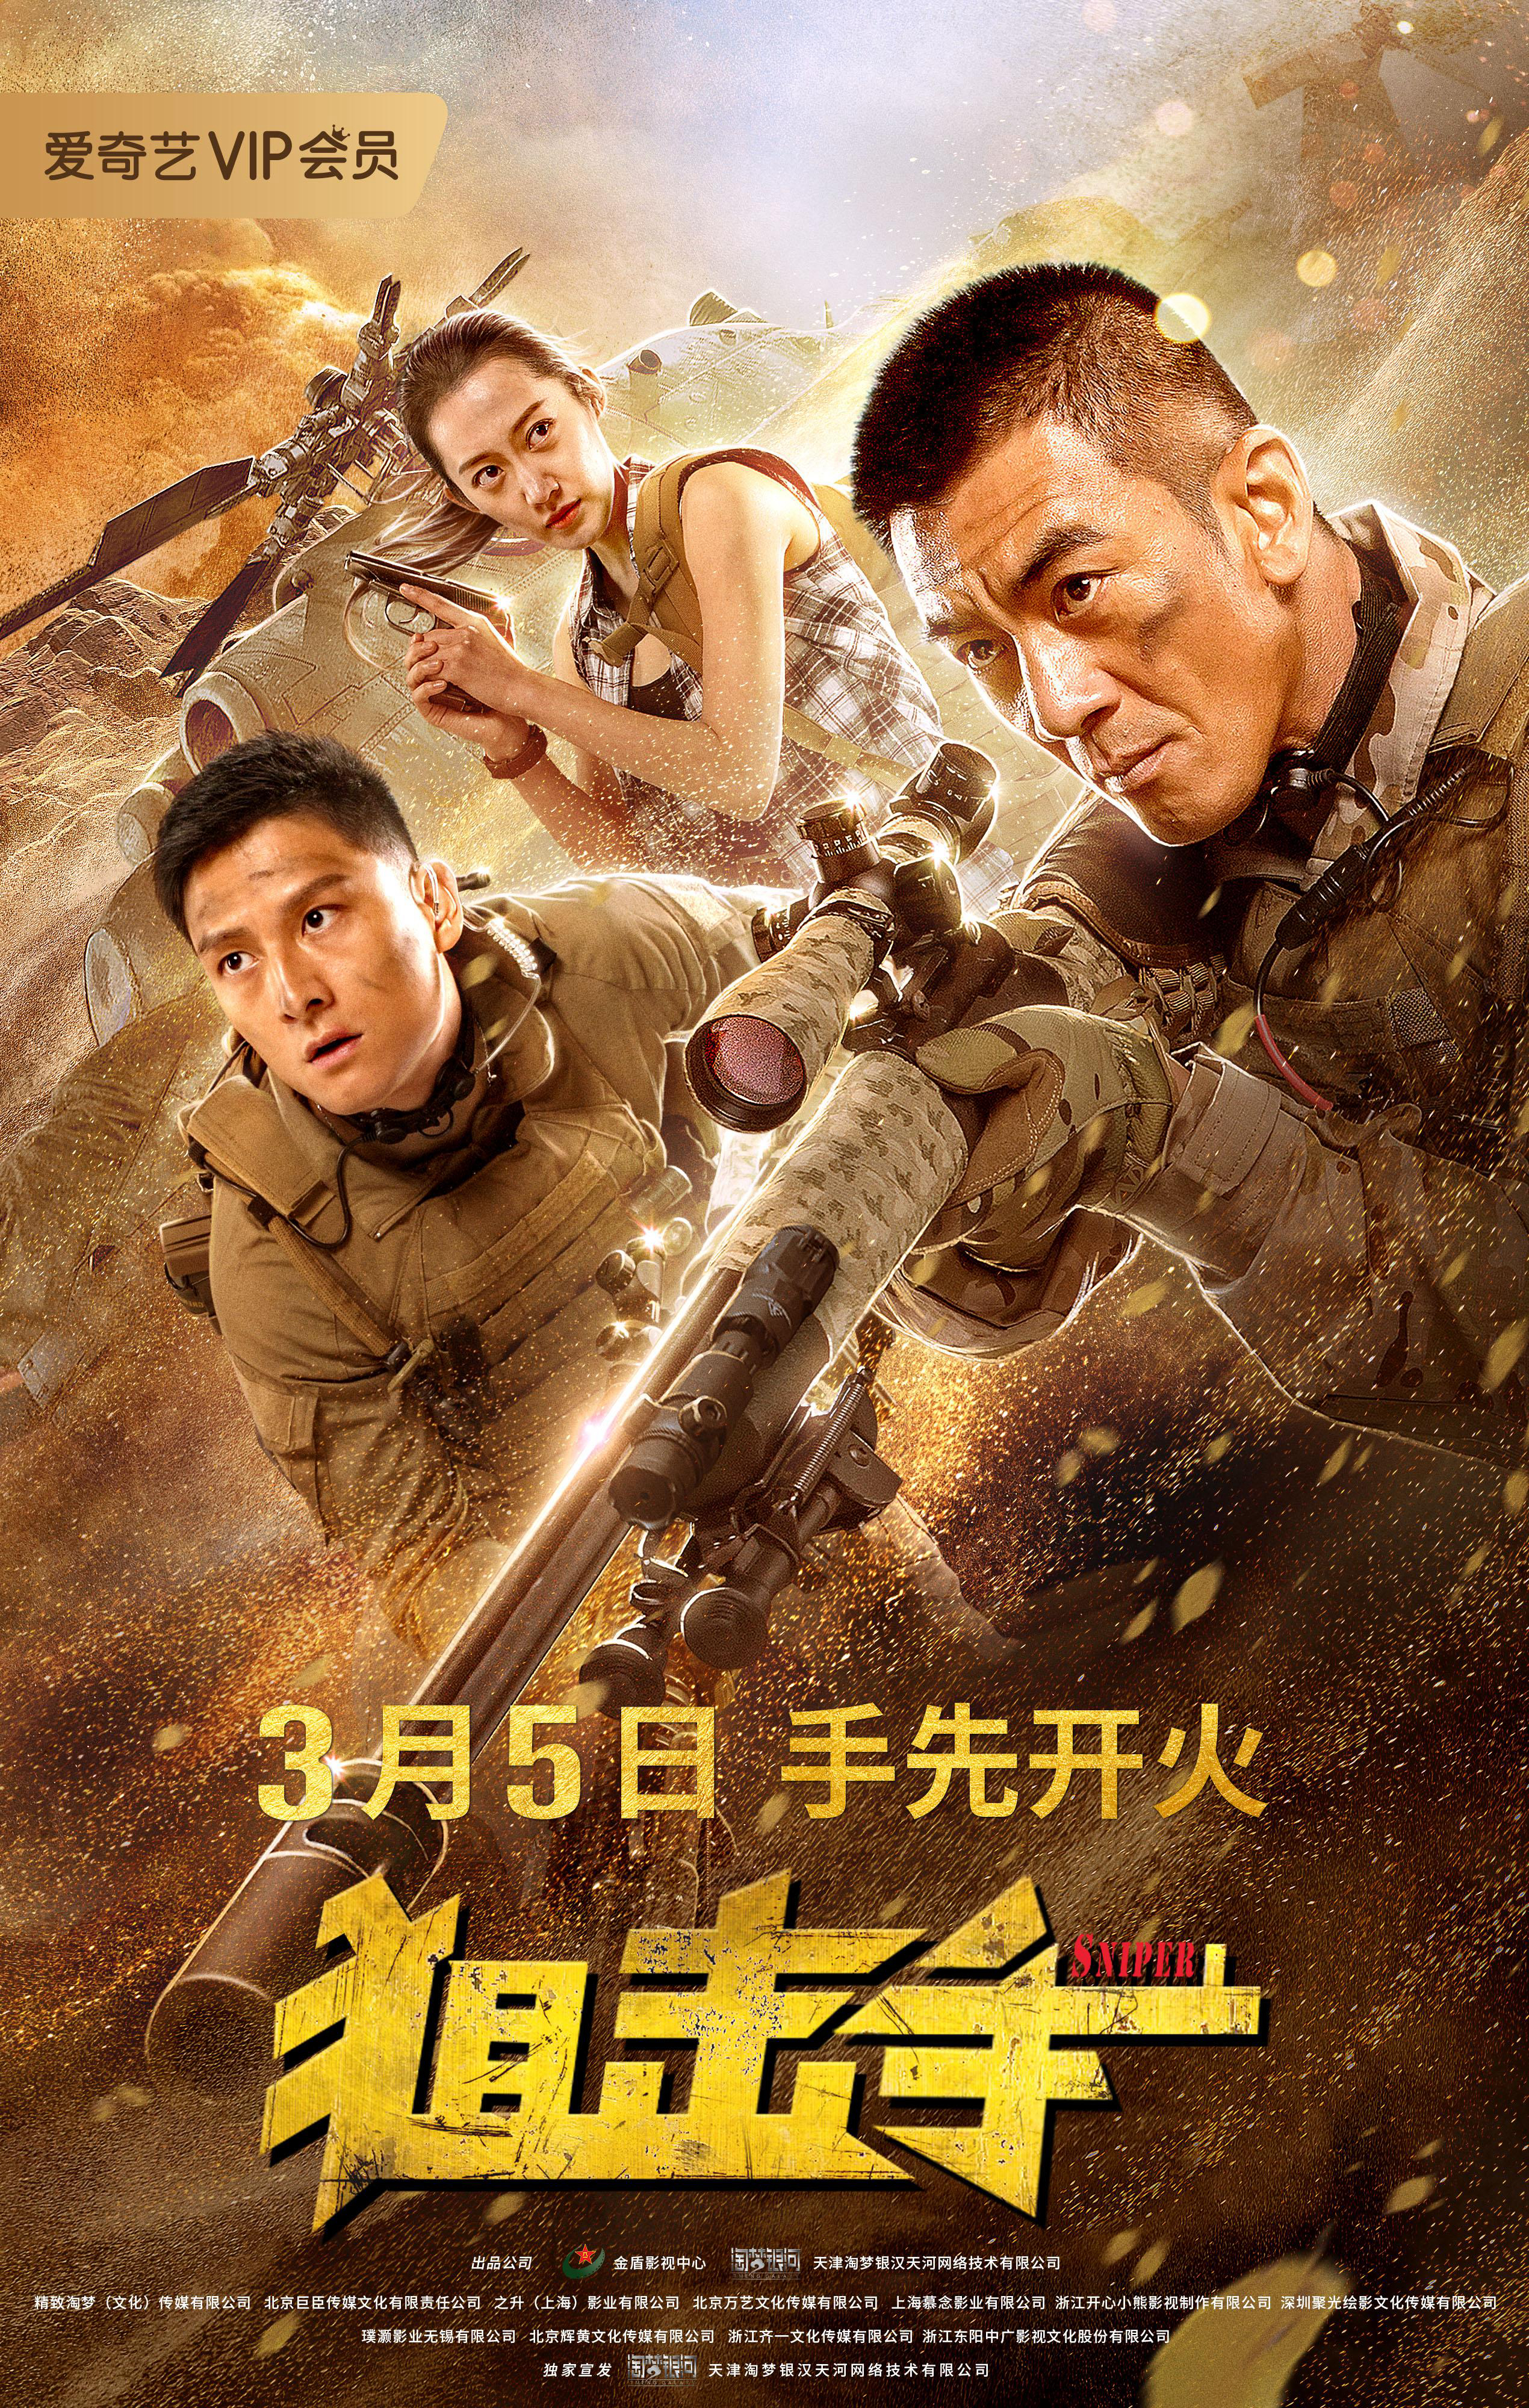 Poster Phim Xạ Thủ (Sniper)